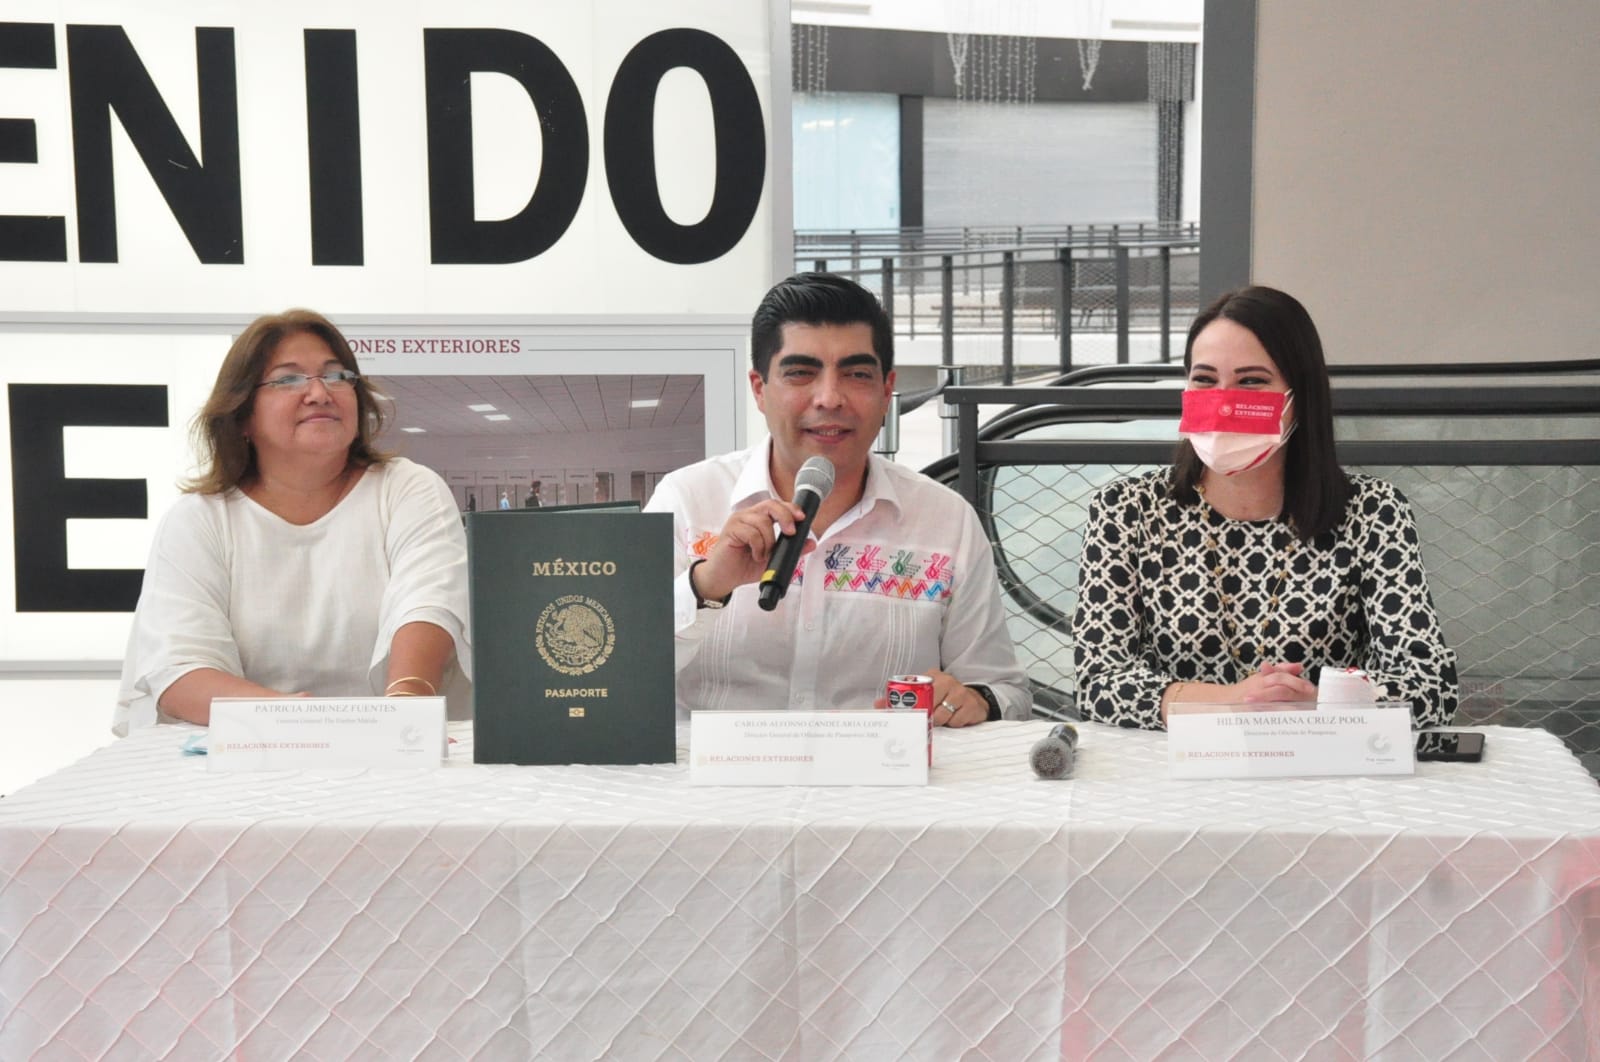 Oficina de Pasaportes en Mérida estrenará oficinas en diciembre